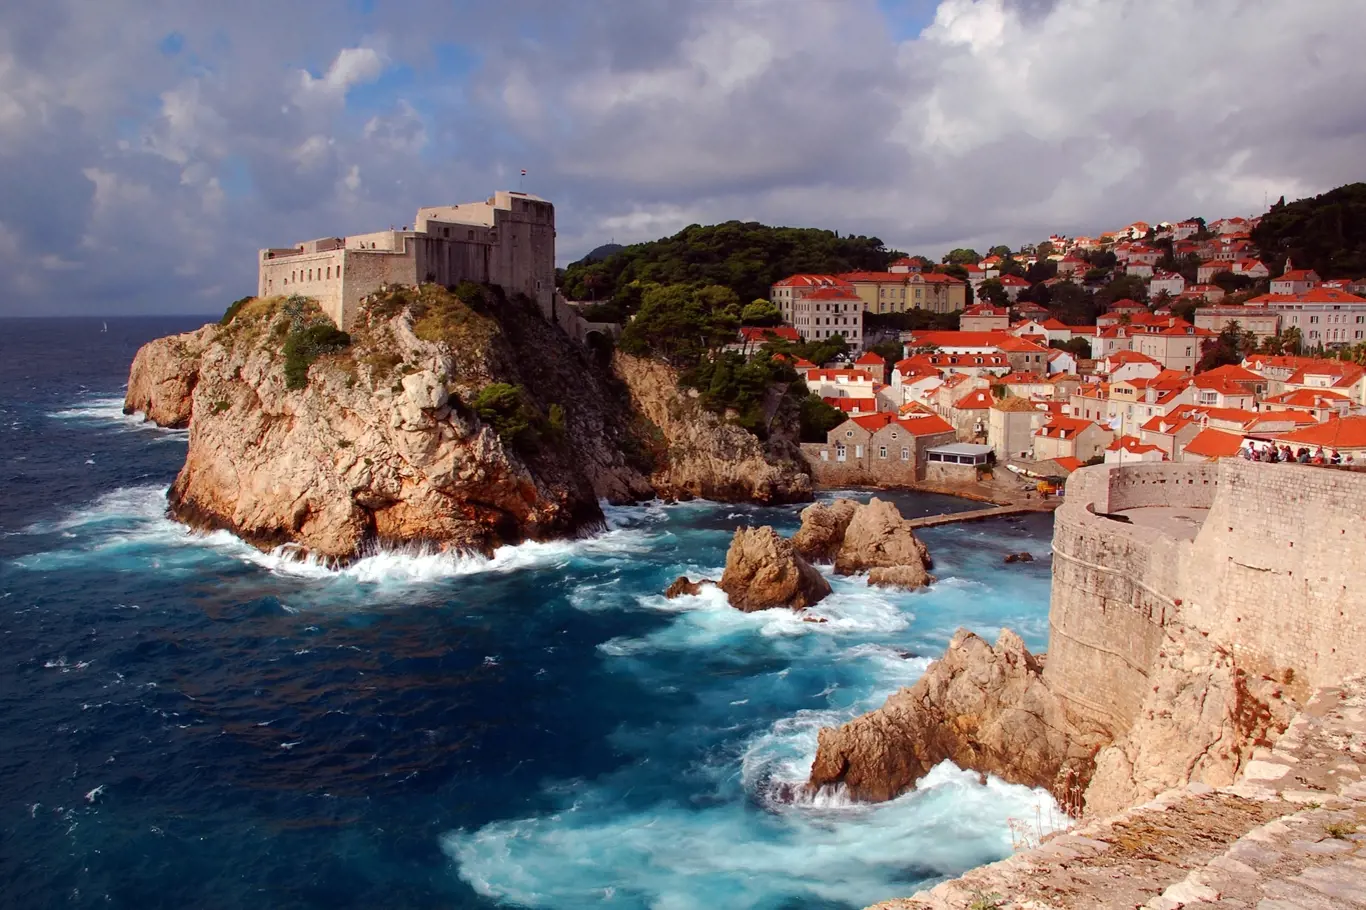 Malebný Dubrovník patří k nejnavštěvovanějším městům v Chorvatsku.